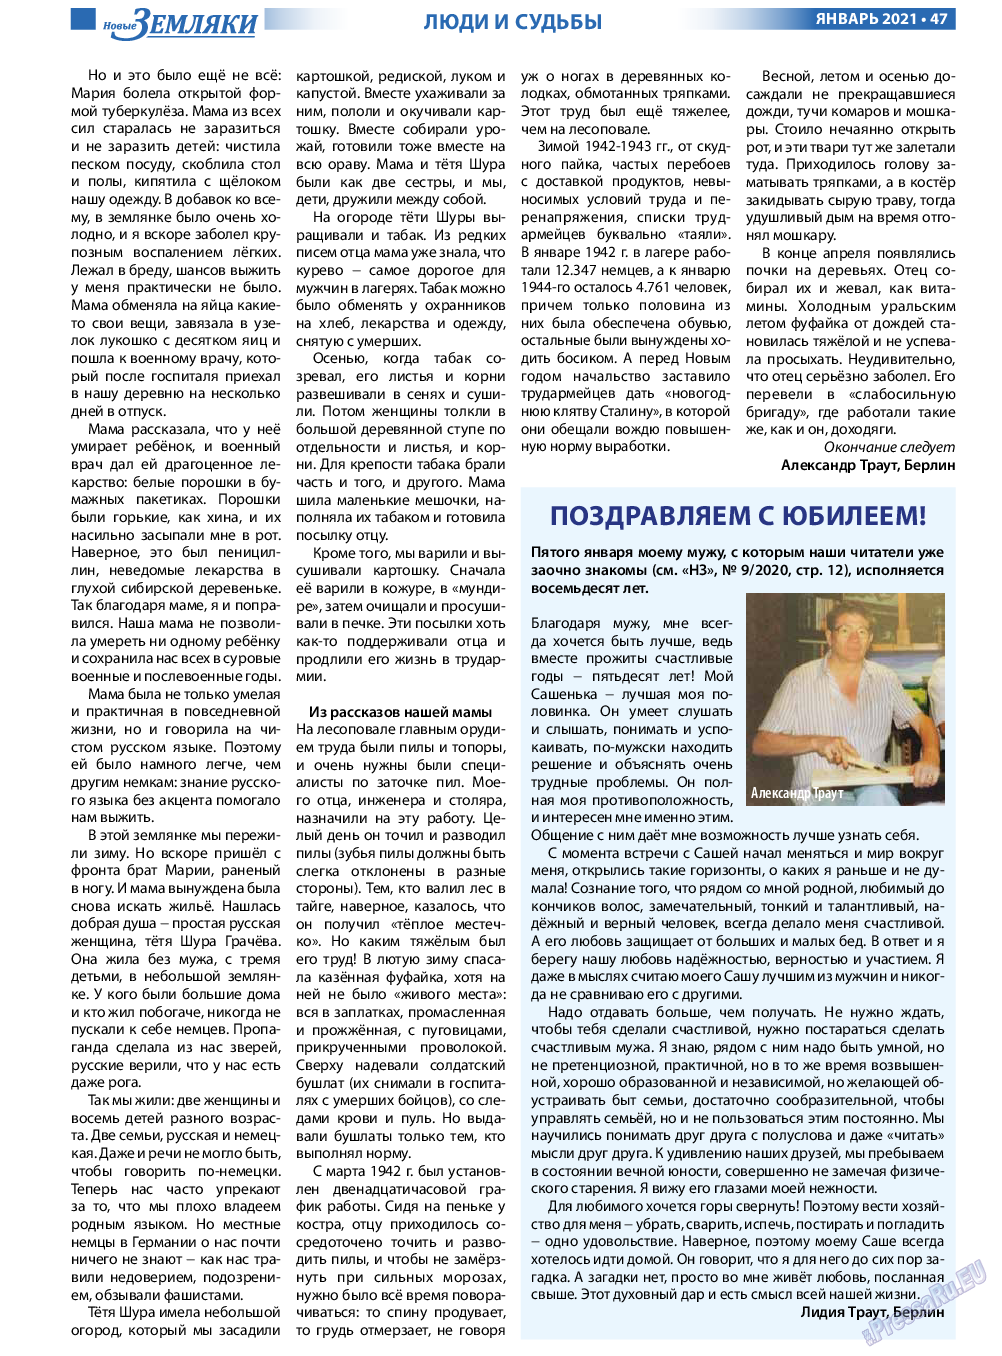 Новые Земляки, газета. 2021 №1 стр.47